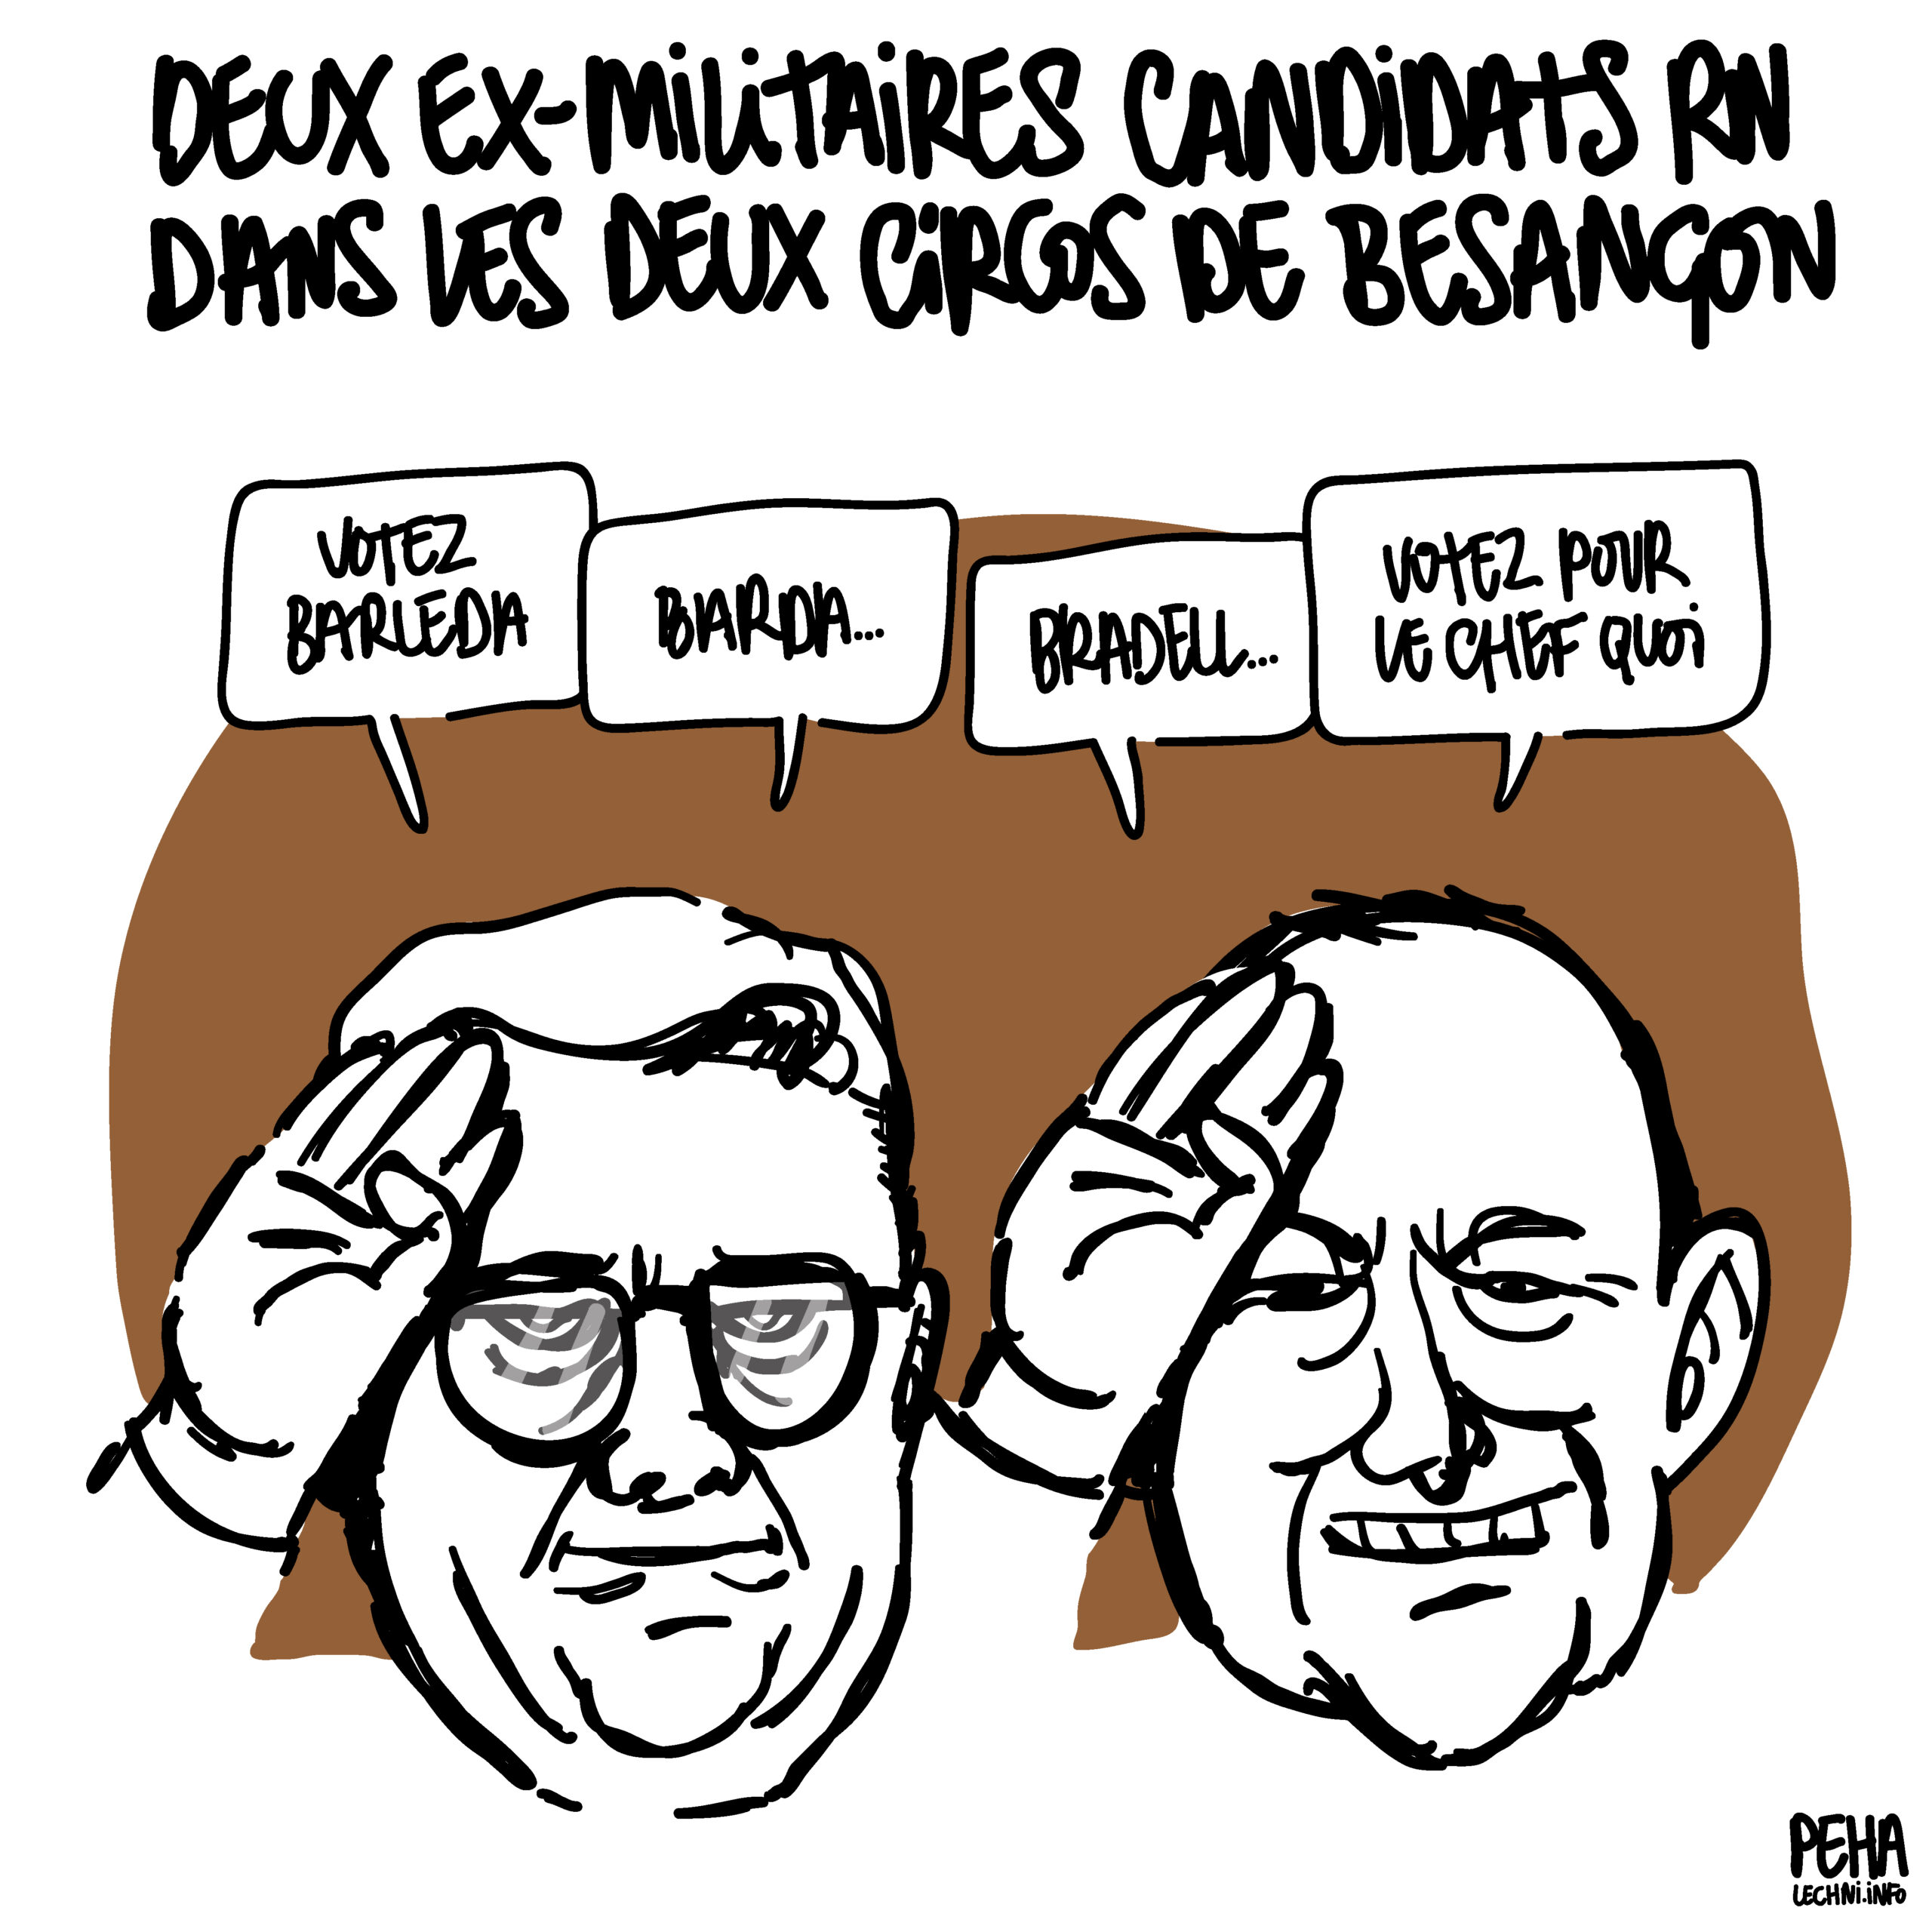 Caricatures d'Éric Fusis et Thomas Lutz côte à côte, en train de faire un salut militaire. Ils disent : votez Barleda, Barda... Bradel... Votez pour le chef quoi